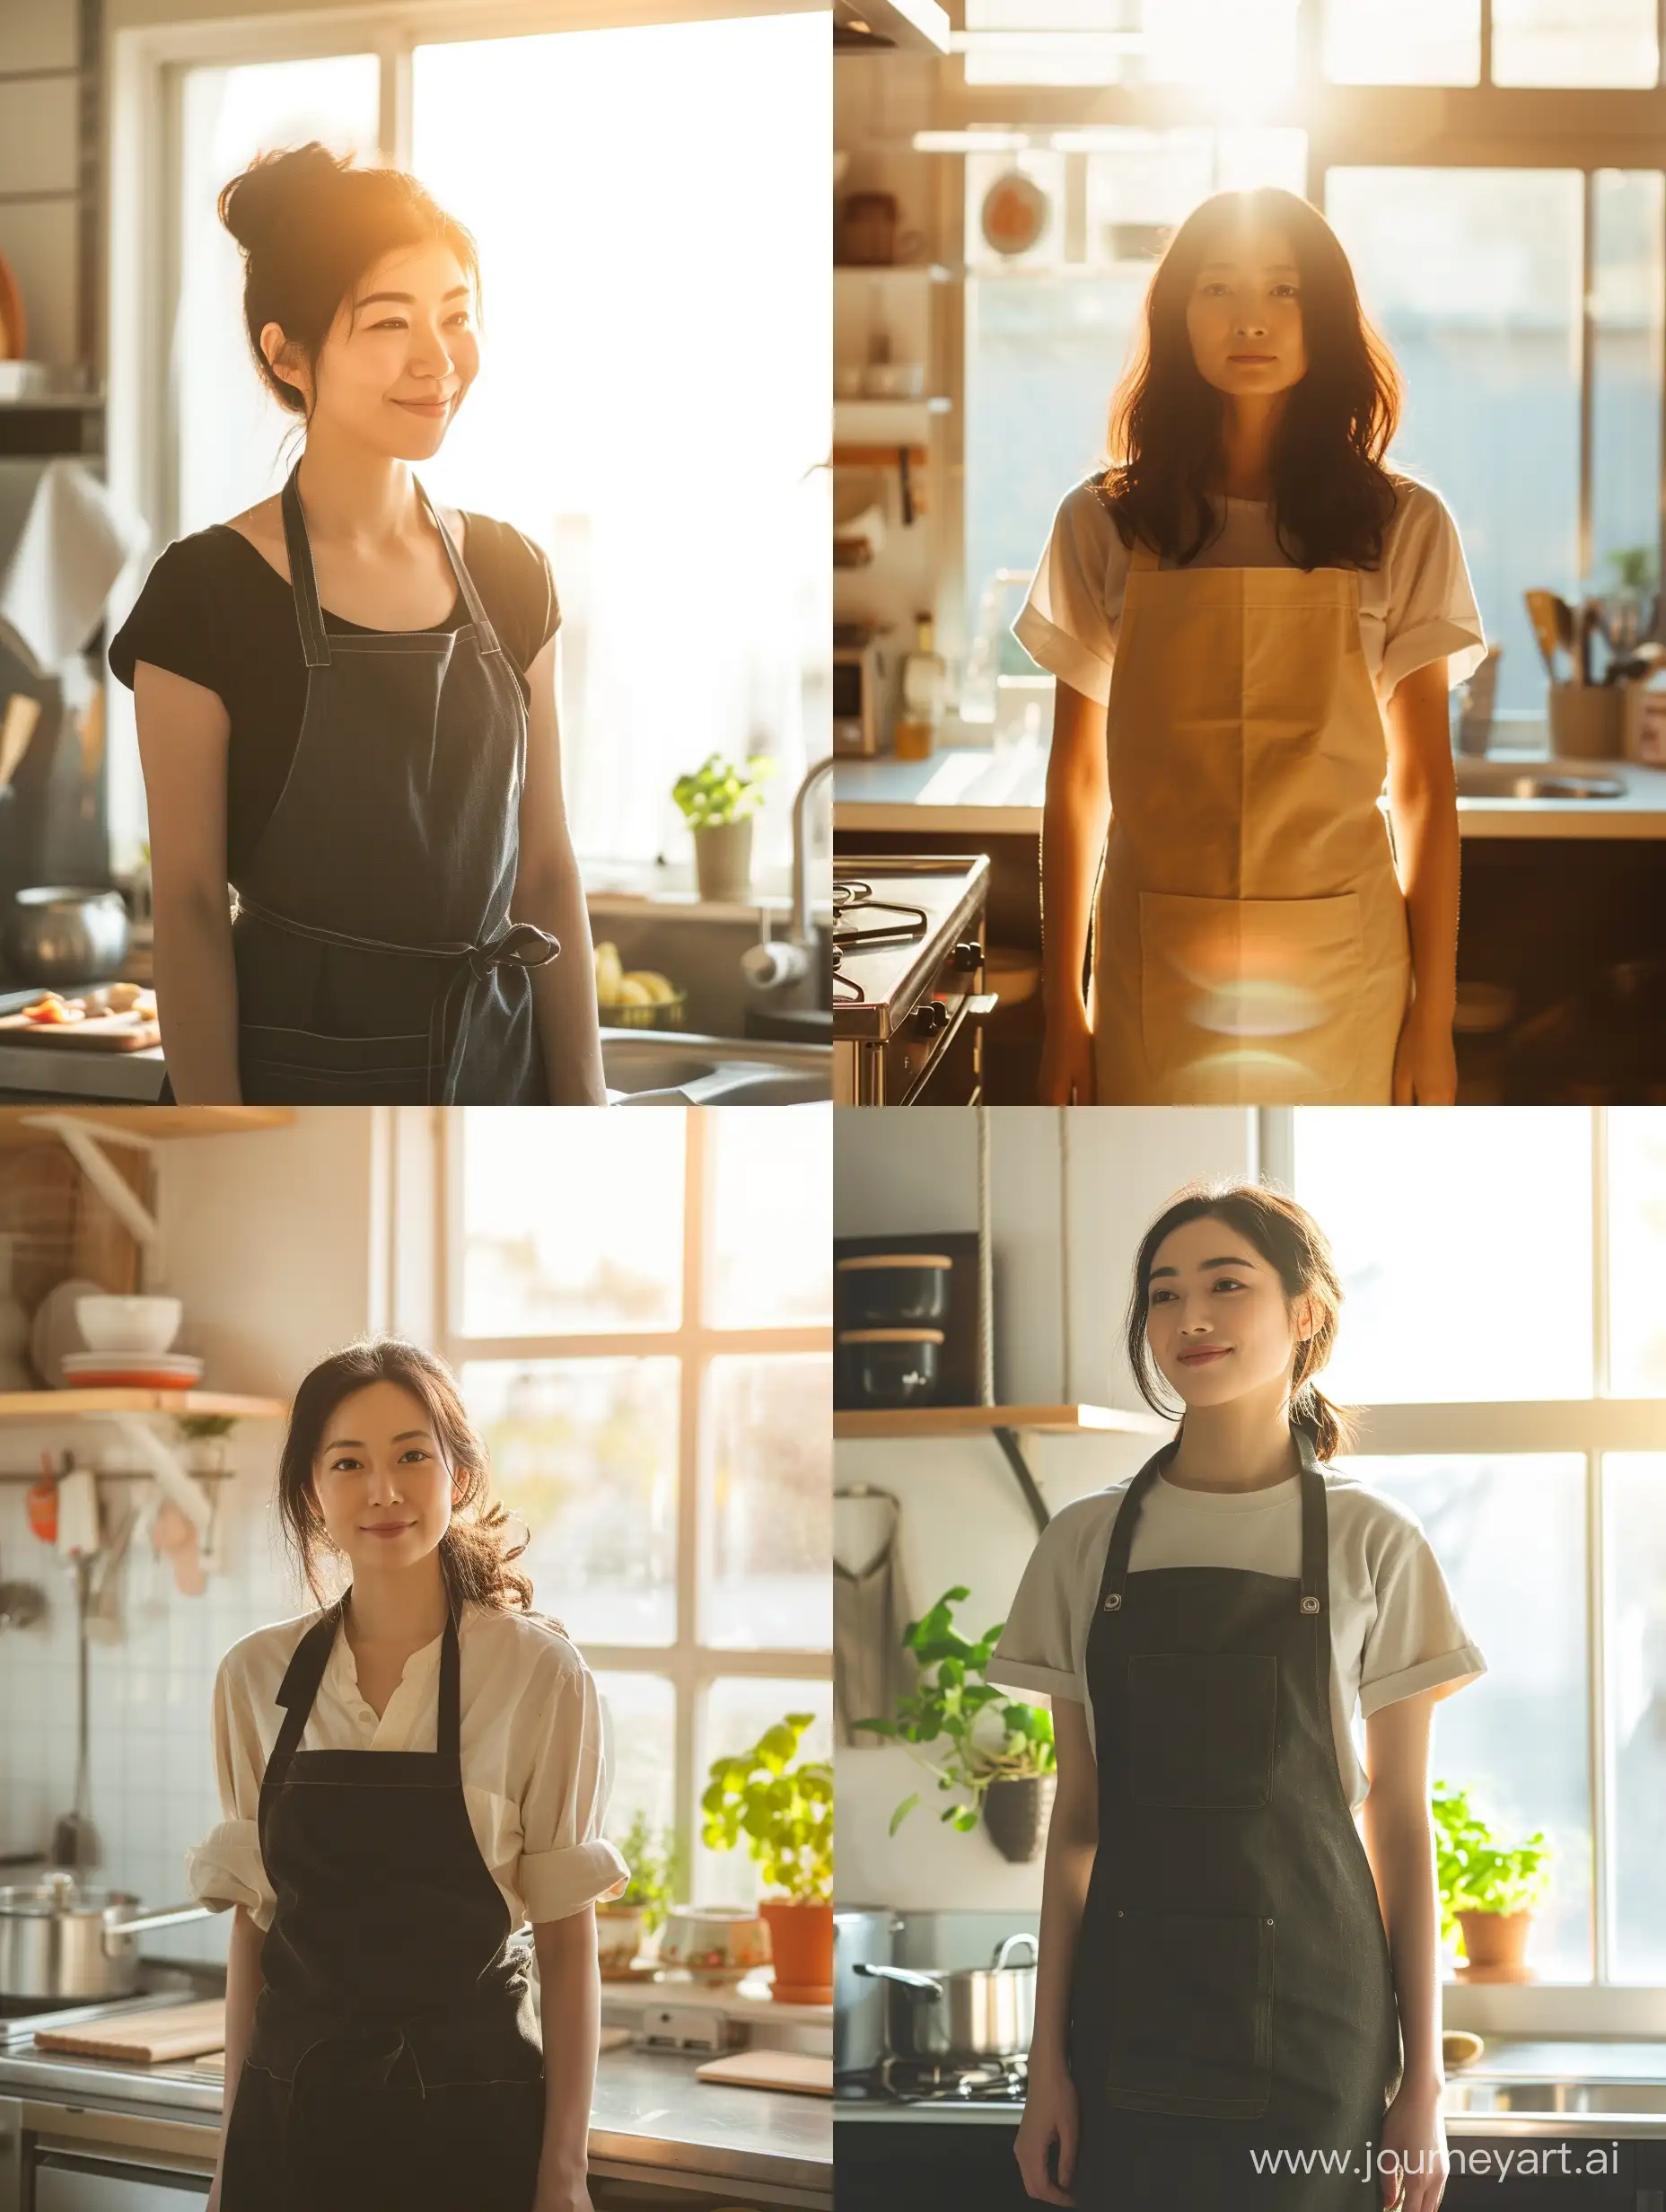 美しい日本人女性がエプロンをしてキッチンに立っている。全身が写っている。お昼前の明るいキッチン。